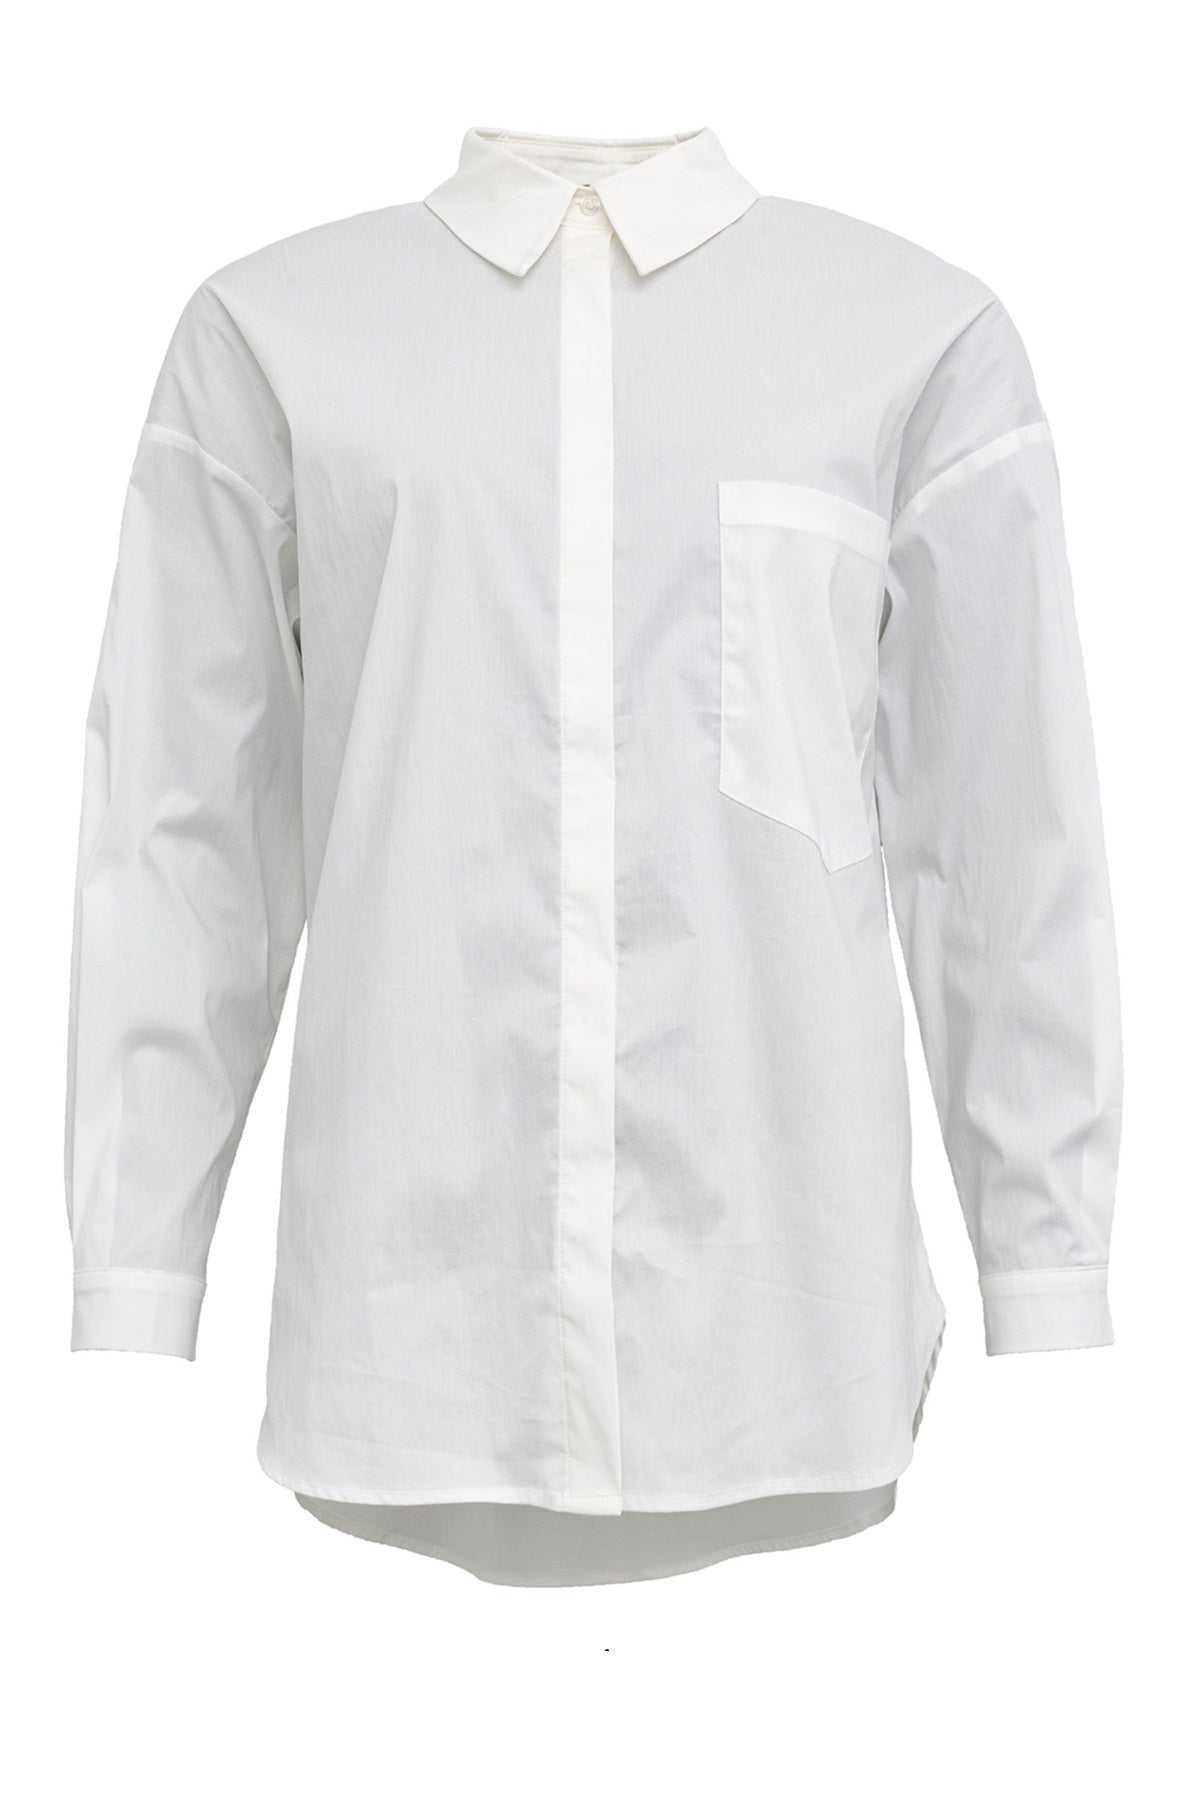 Costamani True shirt 2310114, White